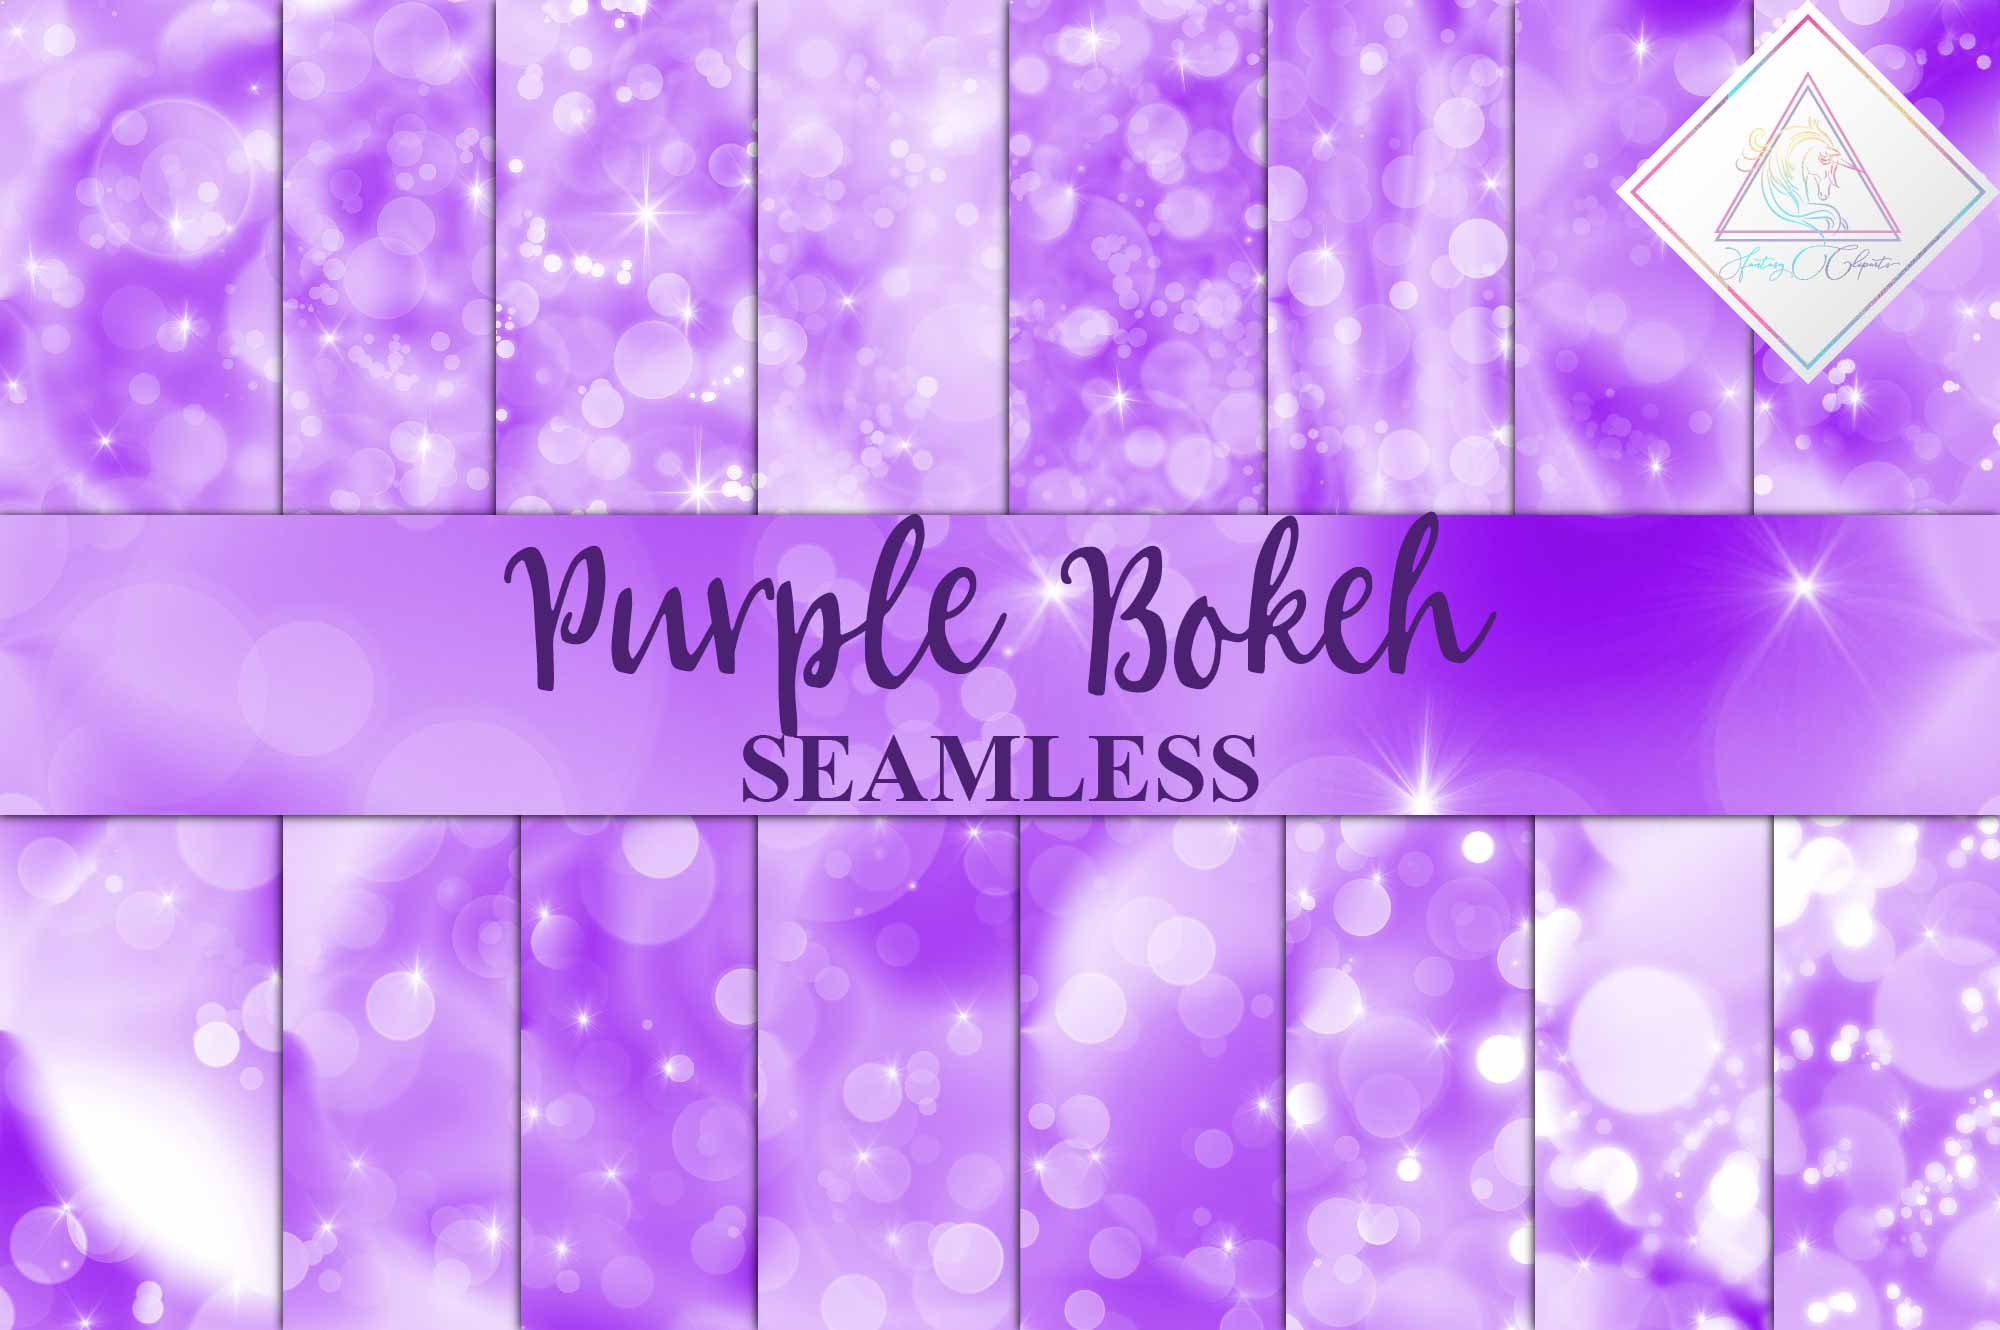 Seamless Purple Bokeh Digital Paper cover image.